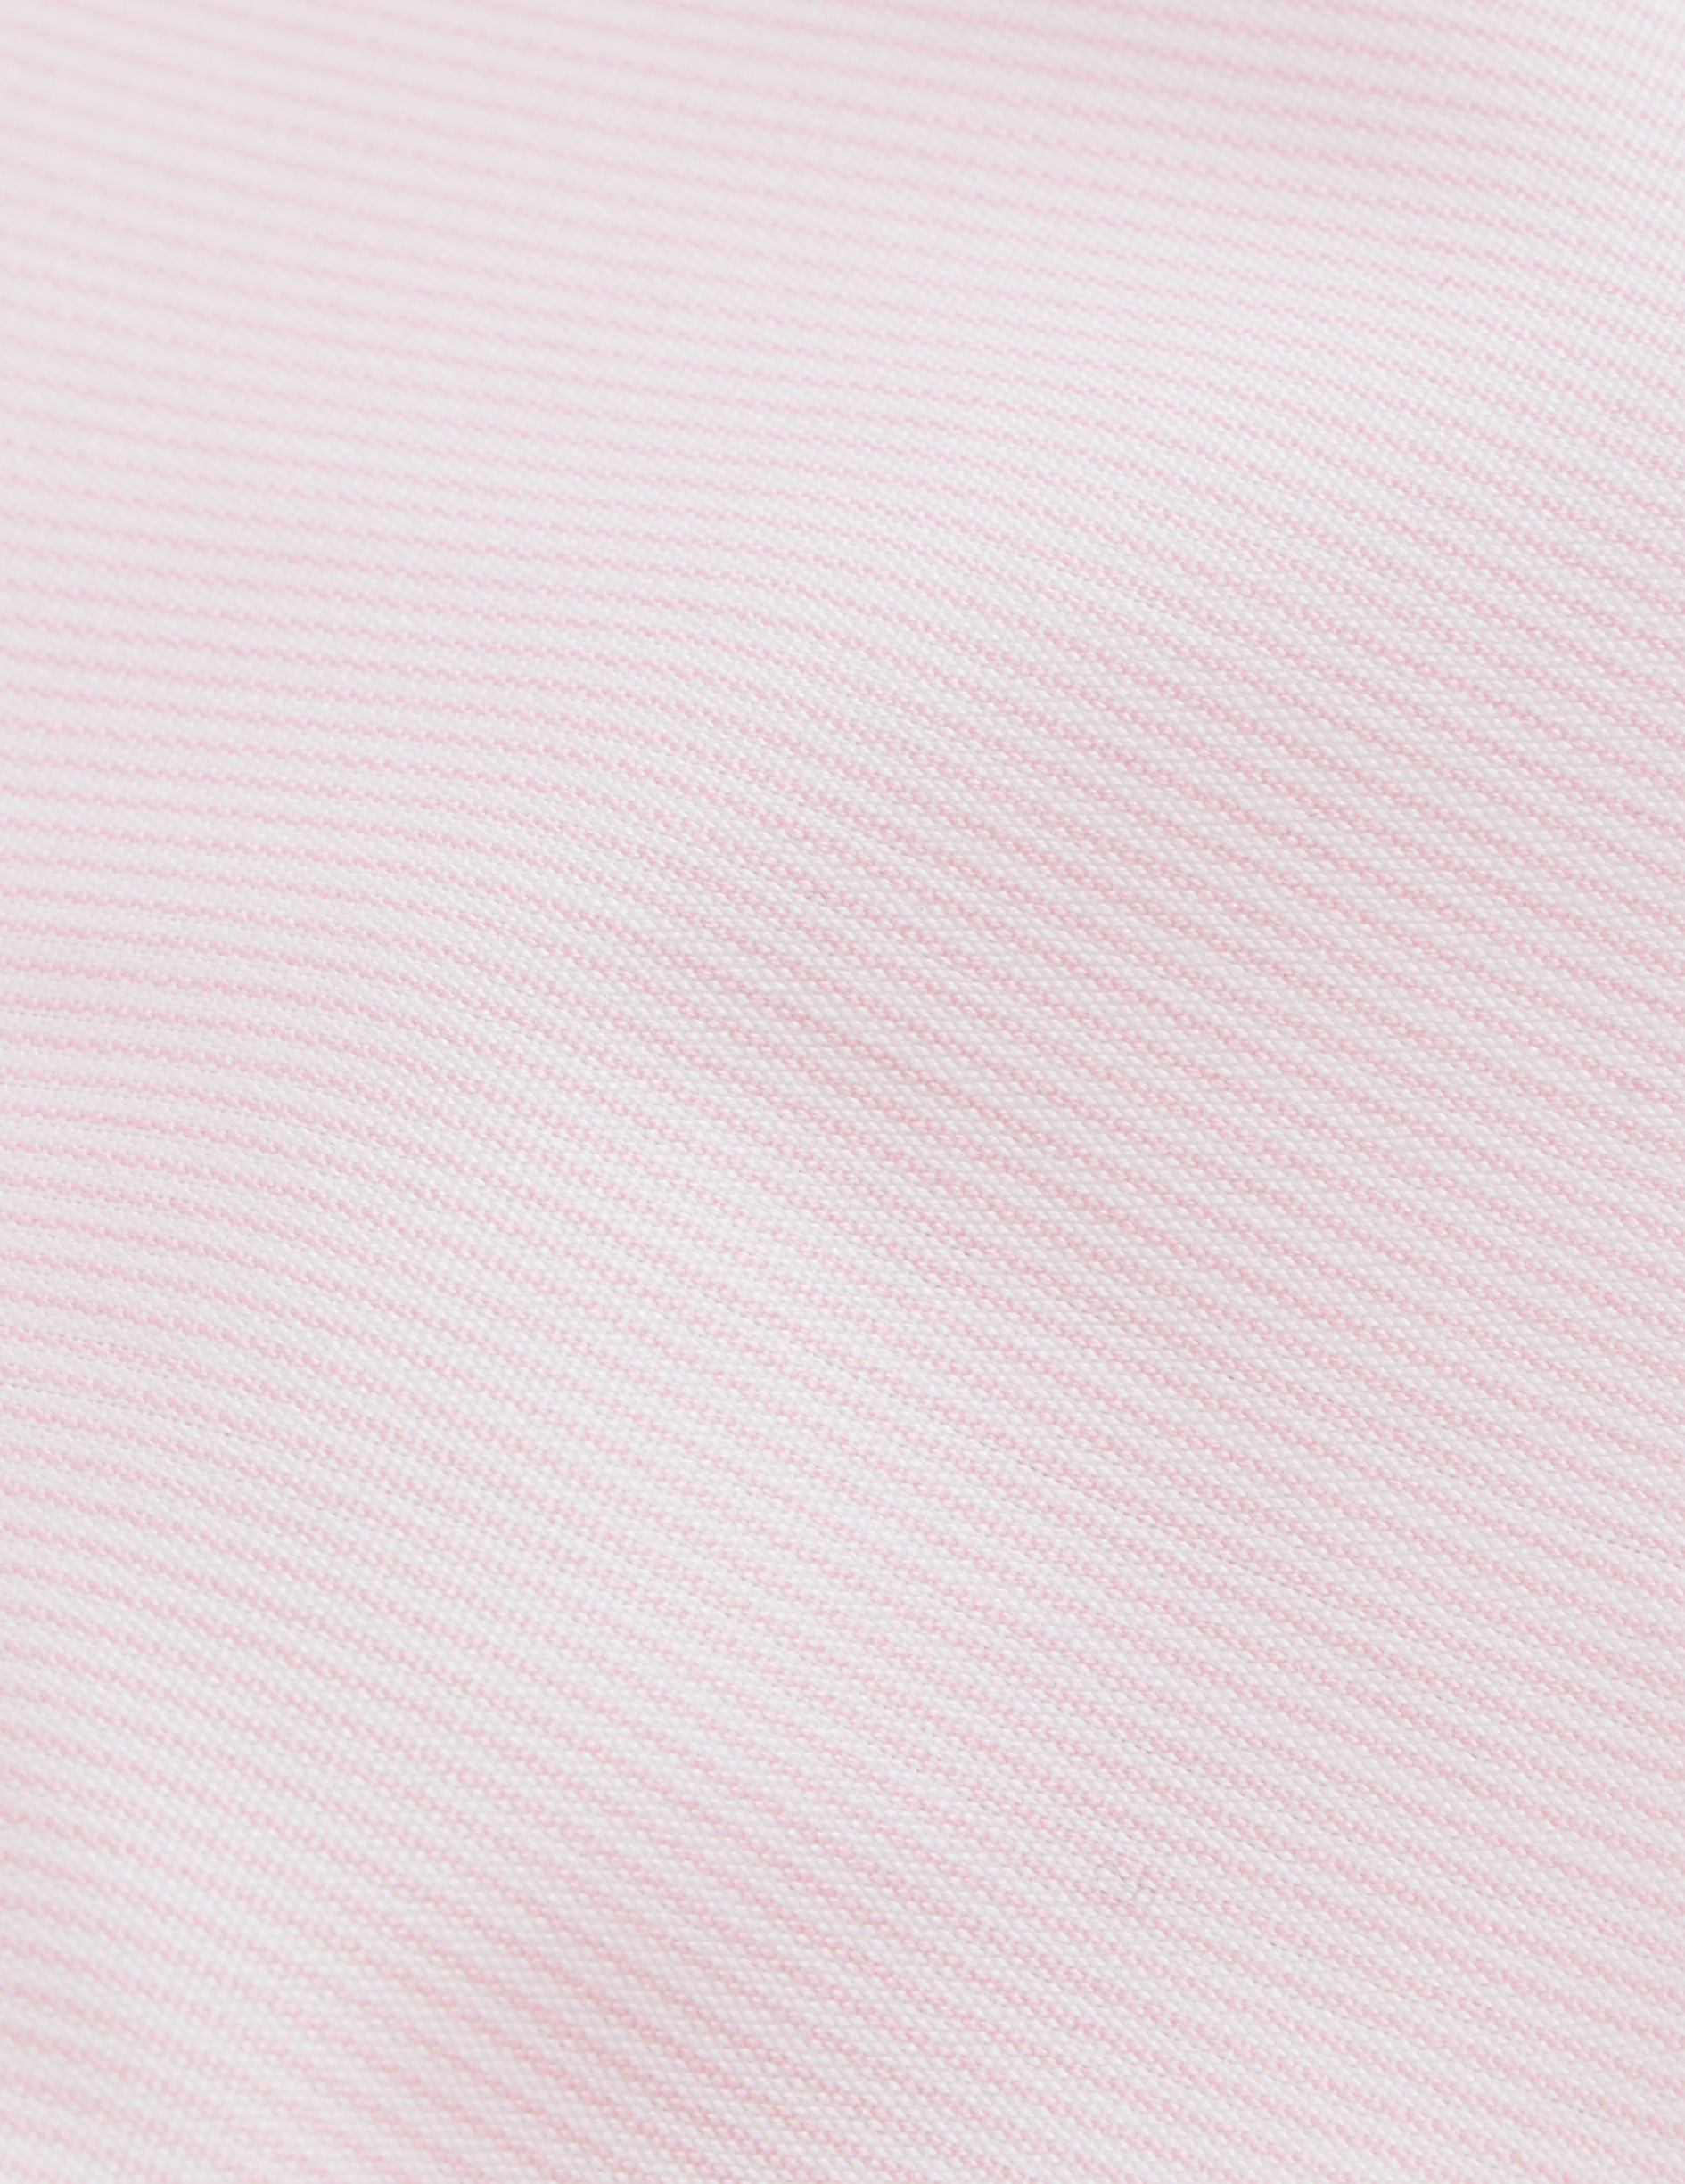 Chemise Semi-ajustée rayée rose - Popeline - Col Figaret - Poignets Mousquetaires